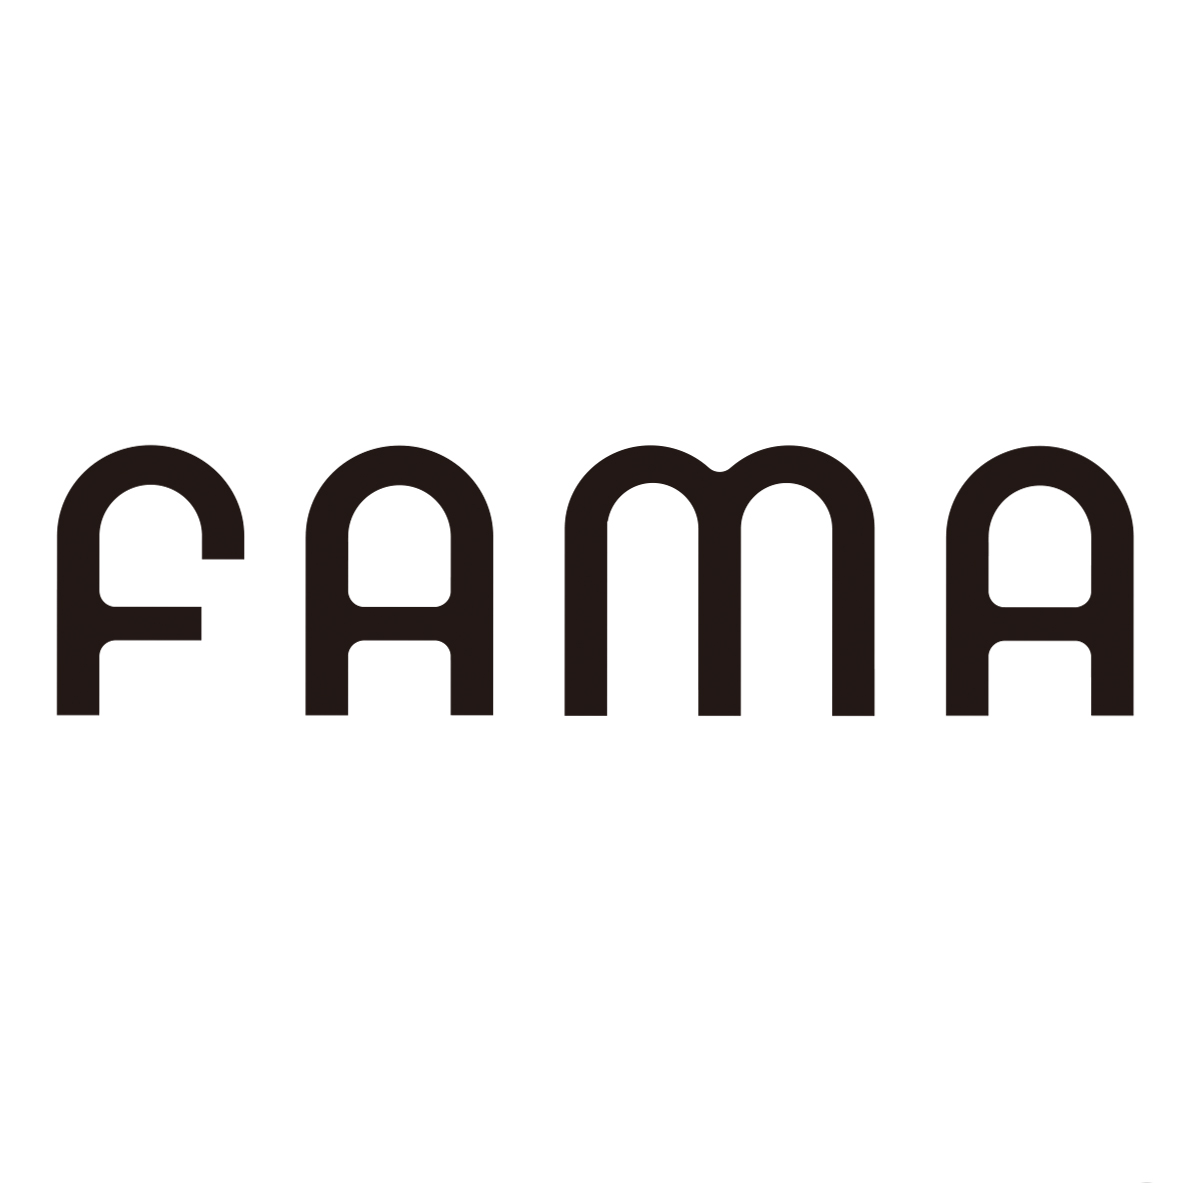 Fama(上海法馬有性格網路科技有限公司)